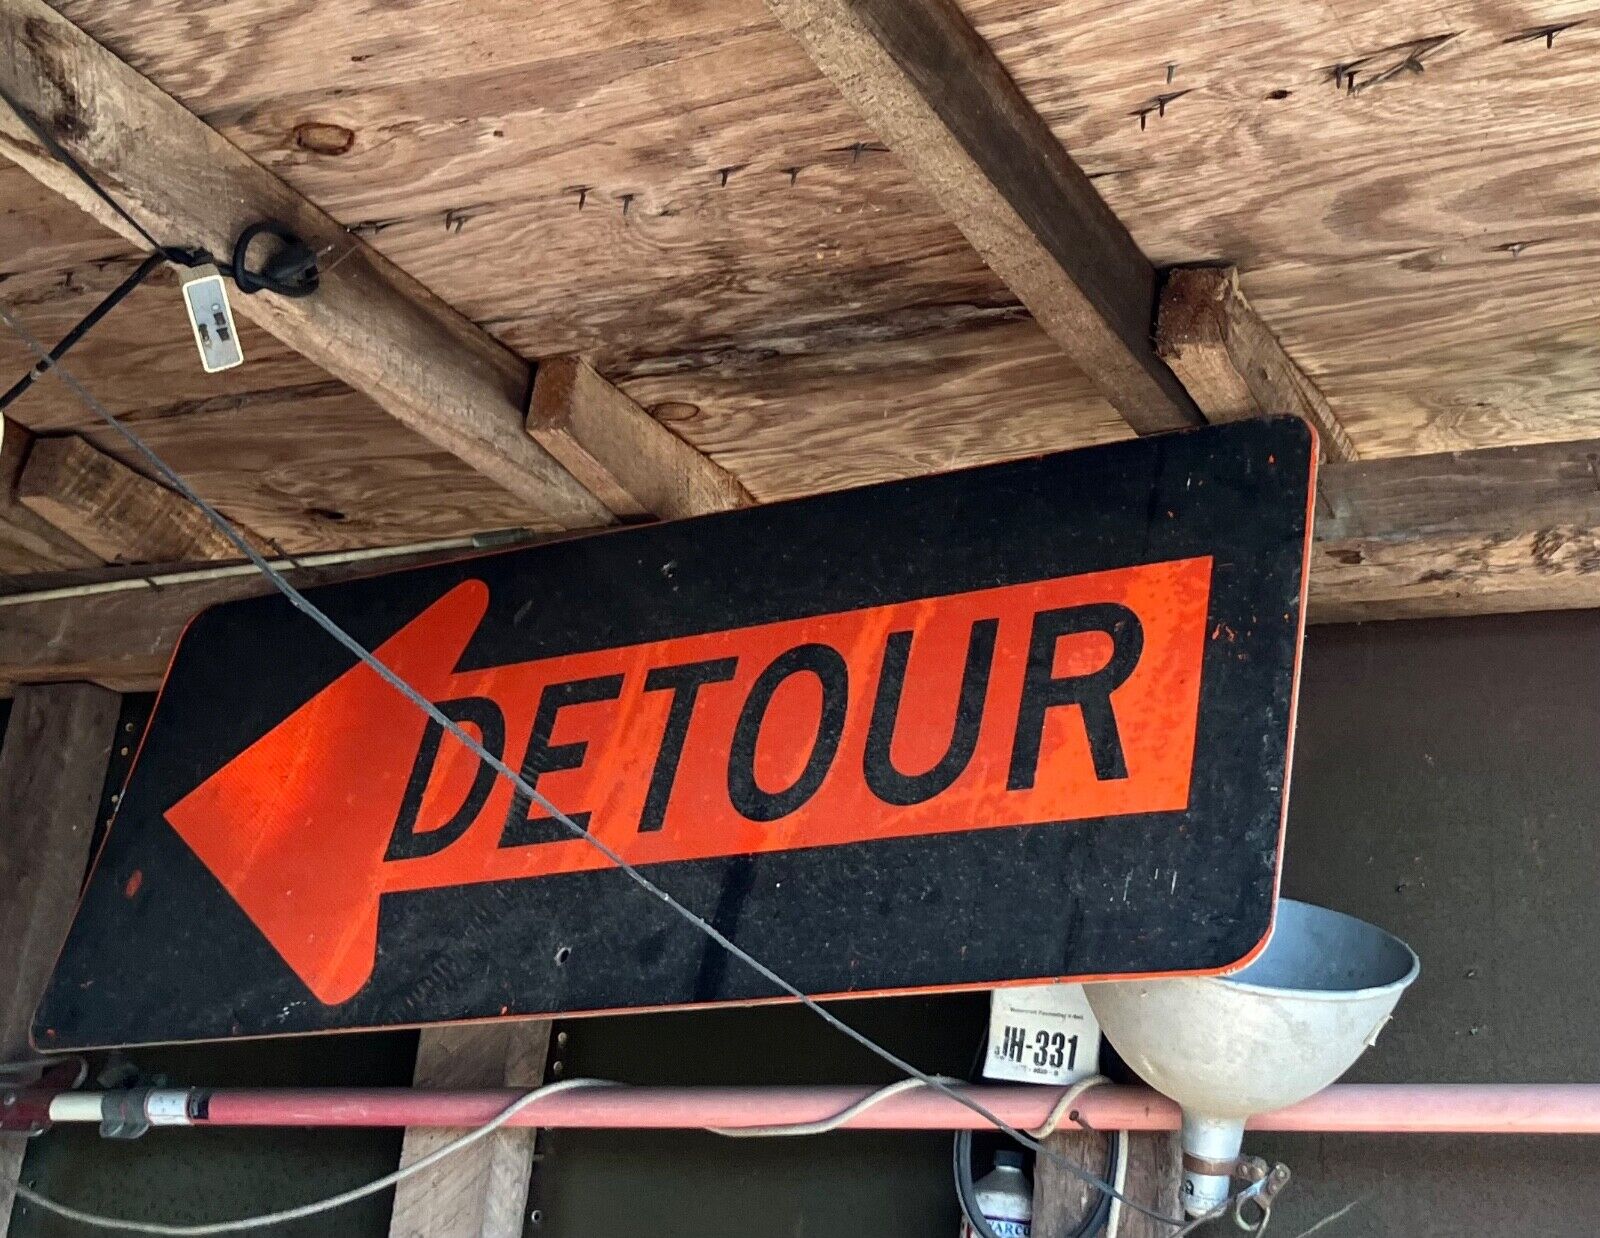 Vintage detour traffic sign